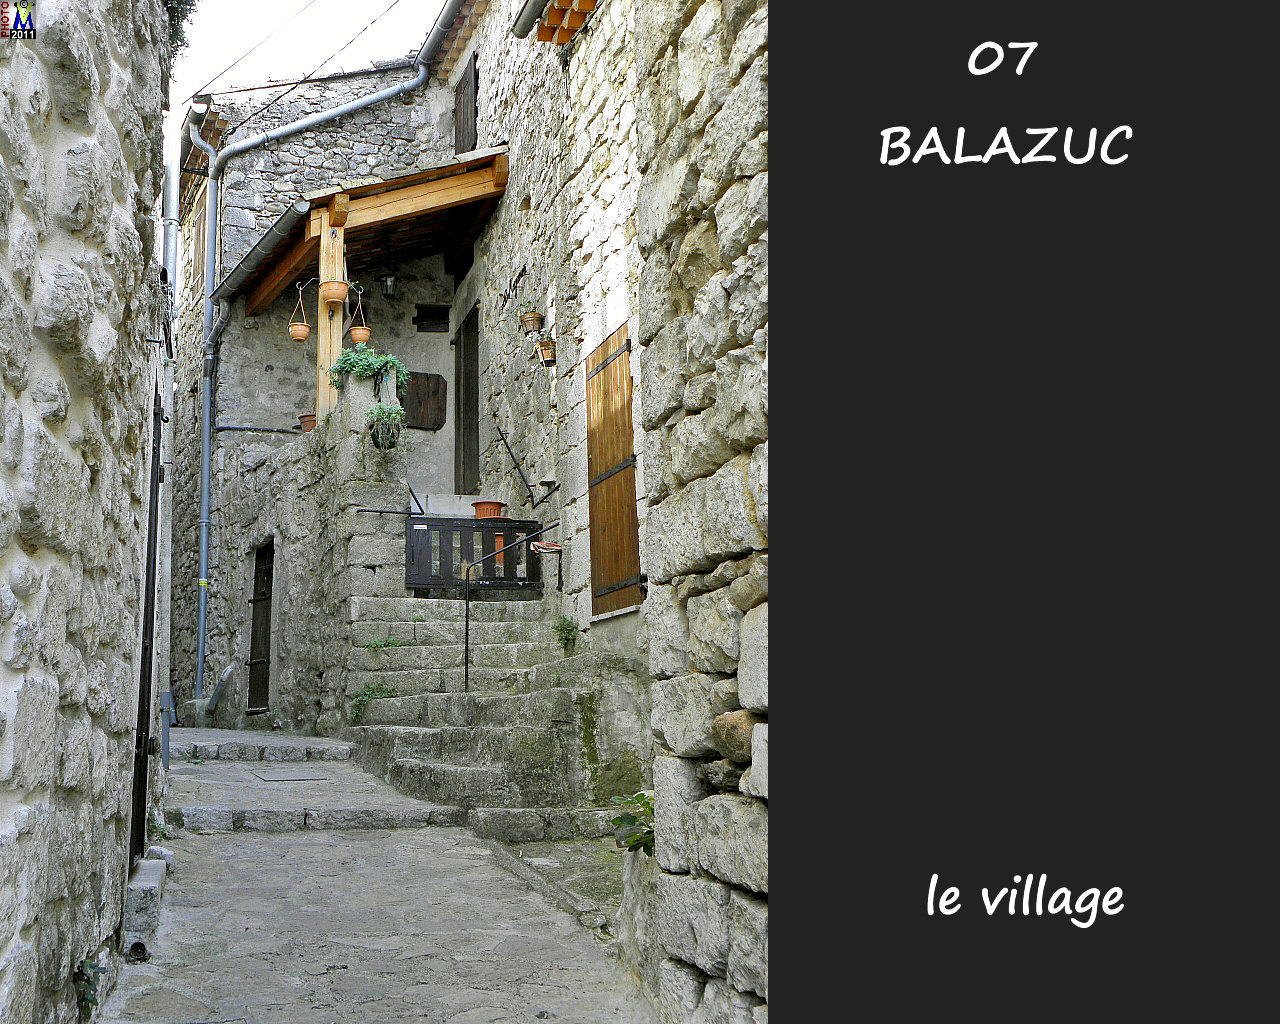 07BALAZUC_village_152.jpg